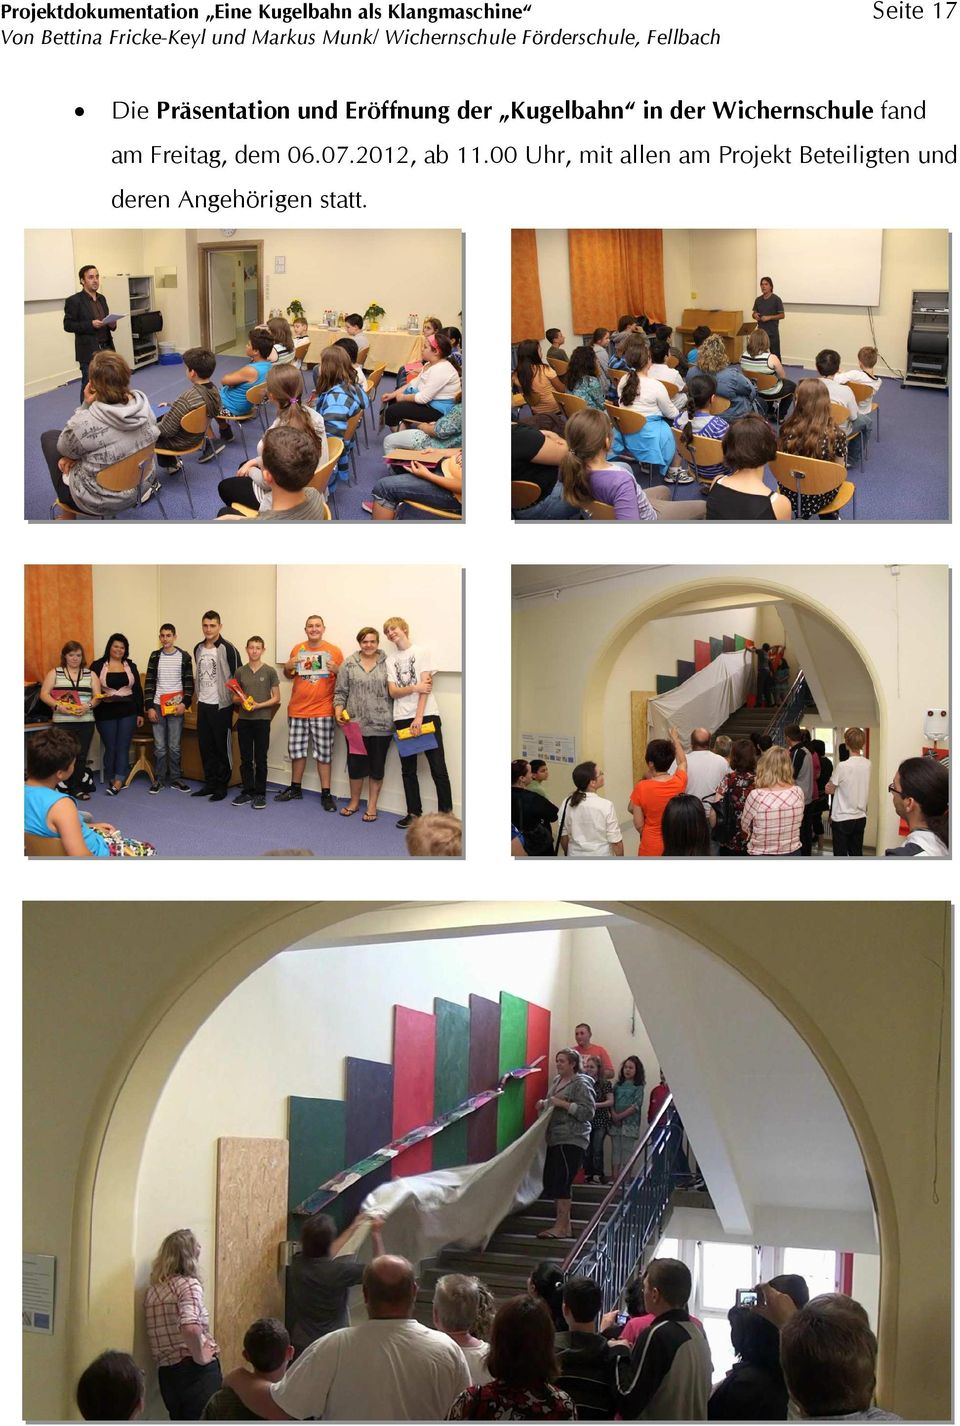 Wichernschule fand am Freitag, dem 06.07.2012, ab 11.